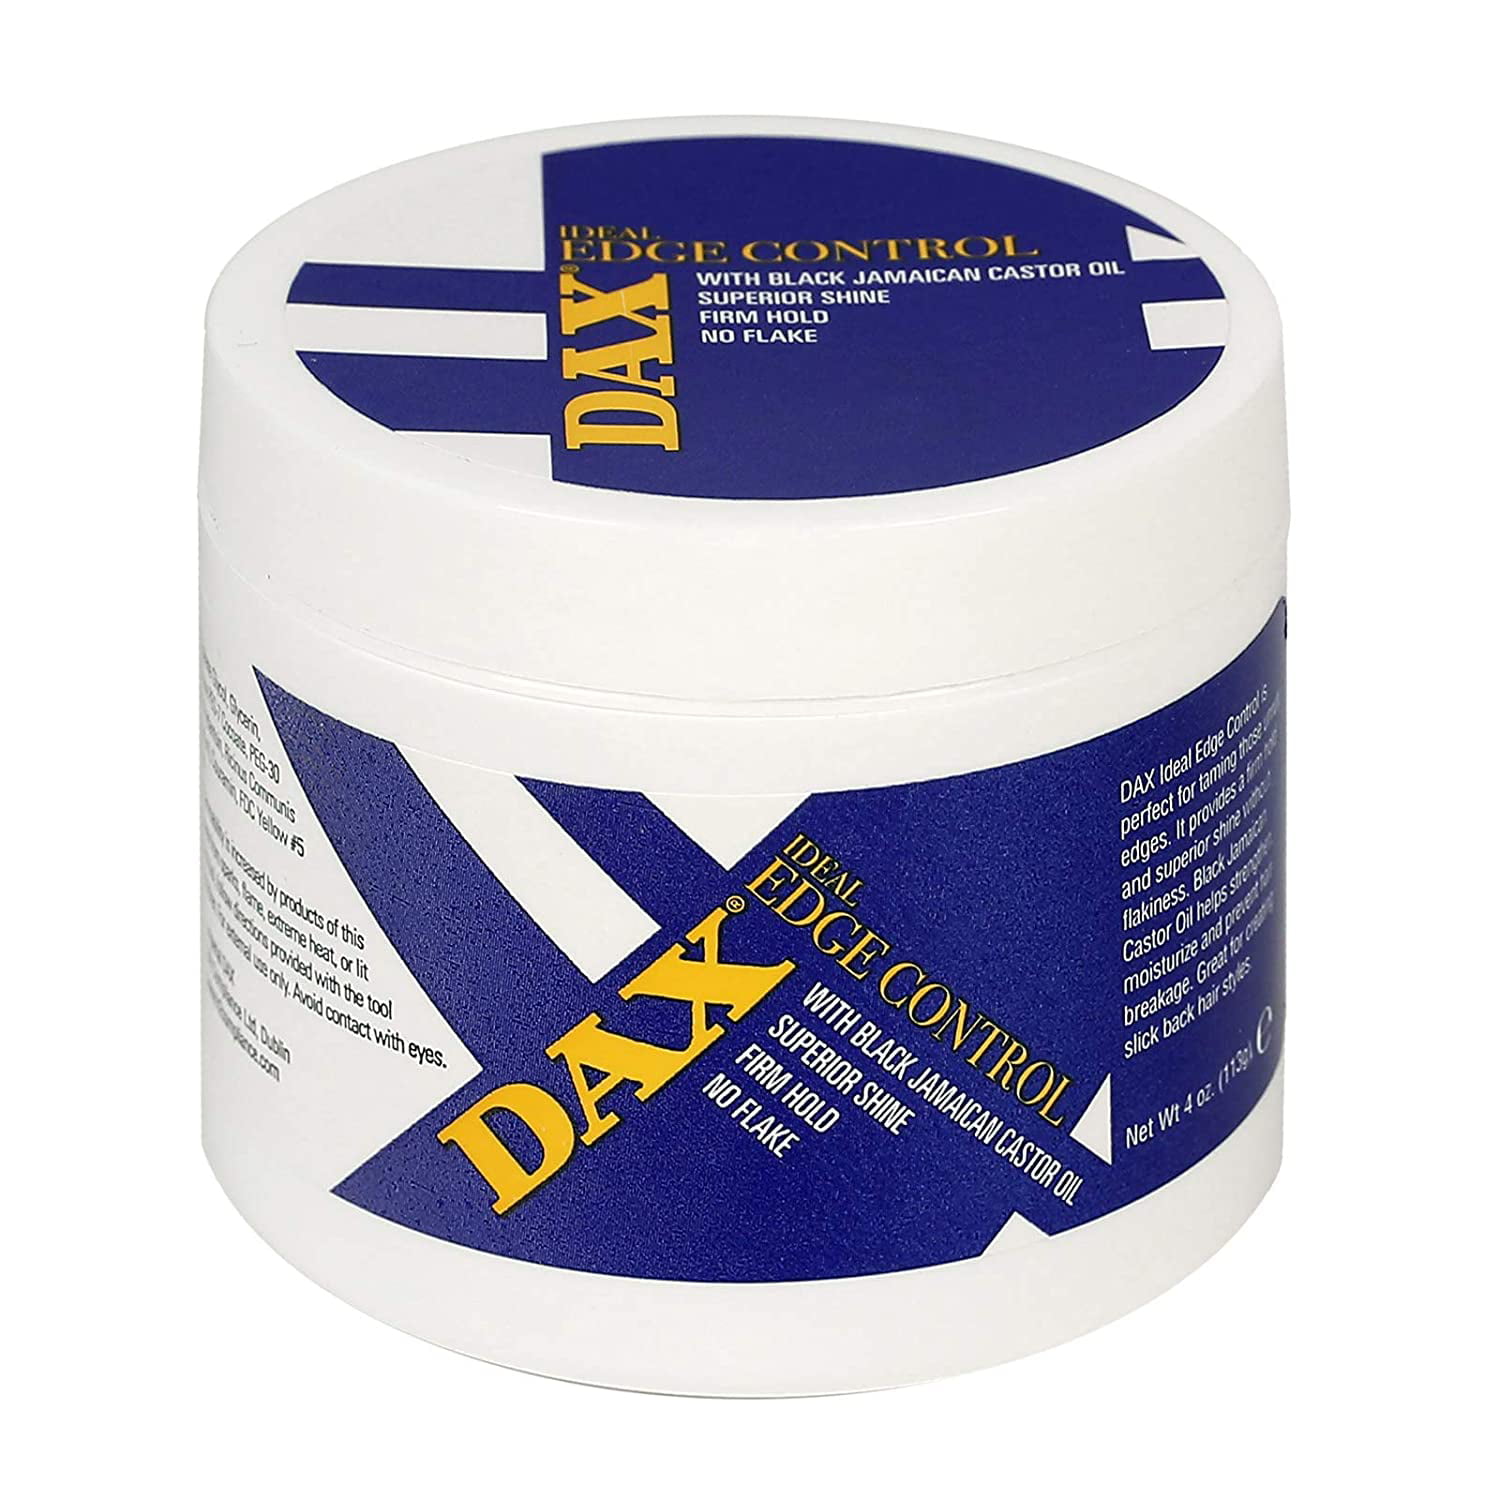 DAX Ideal Edge Control Gel - DAX Hair Care